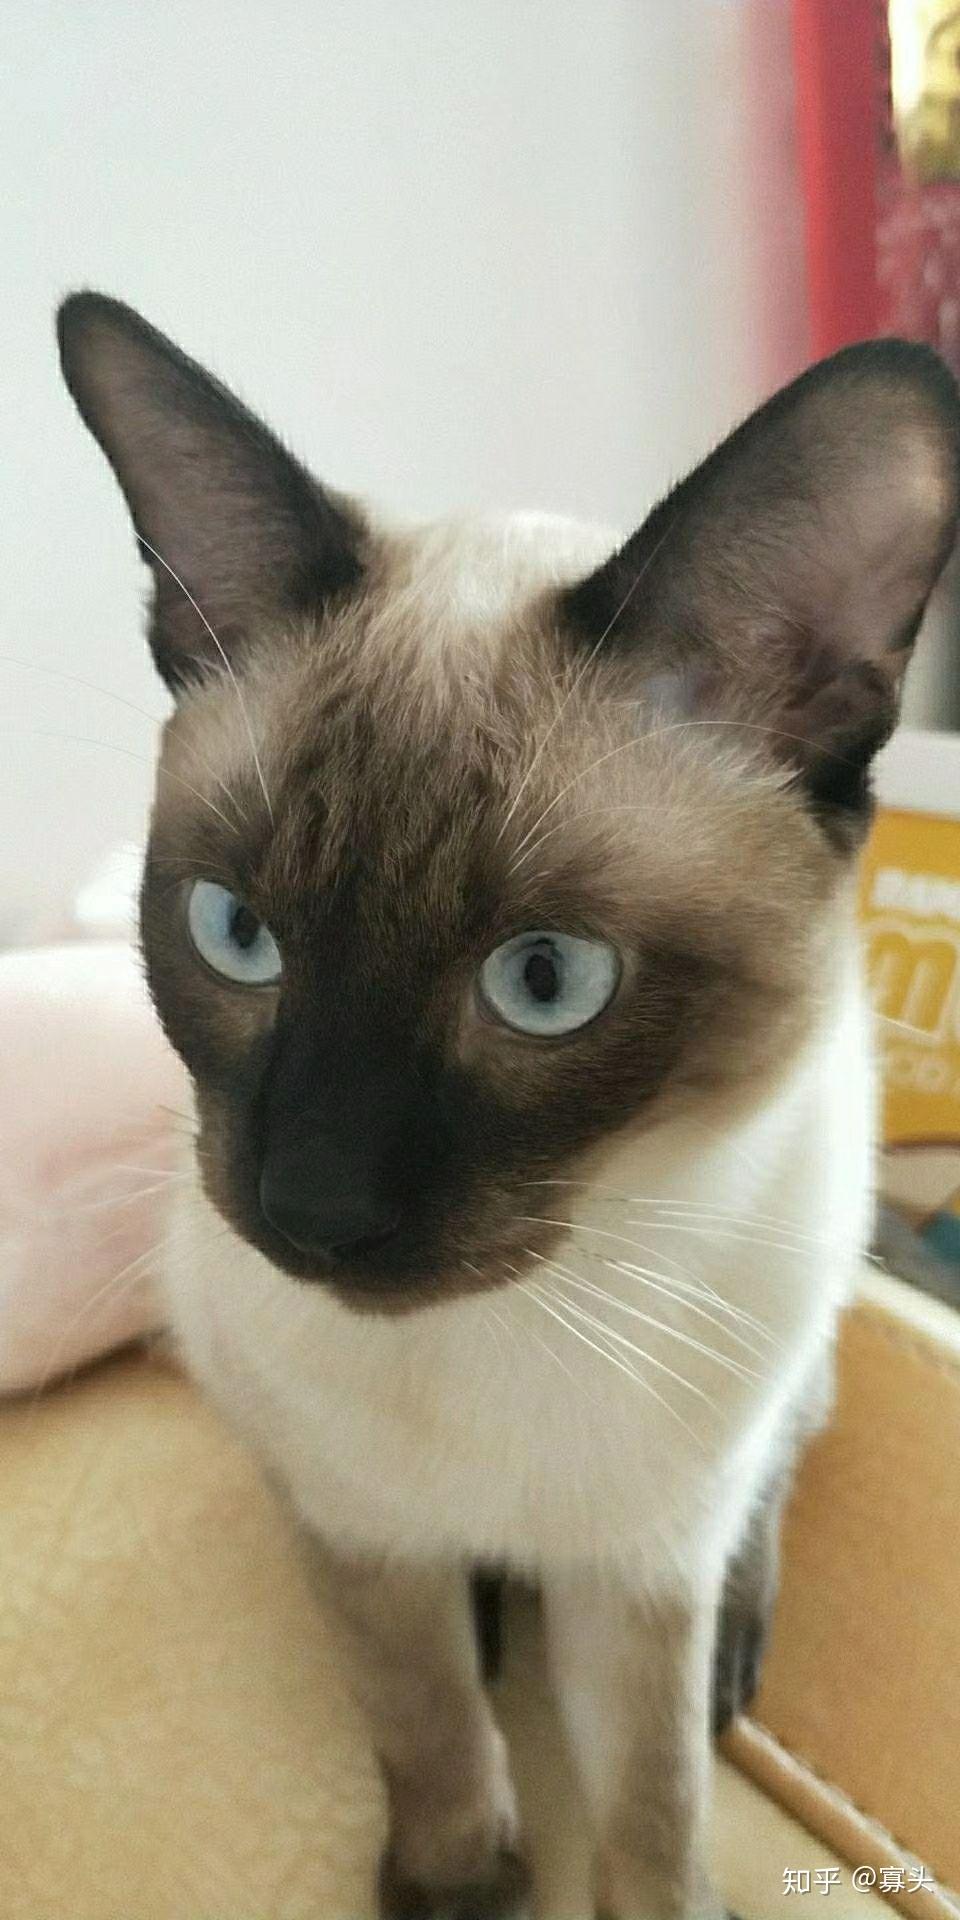 暹罗猫 为什么眼睛蓝的程度不一样? 